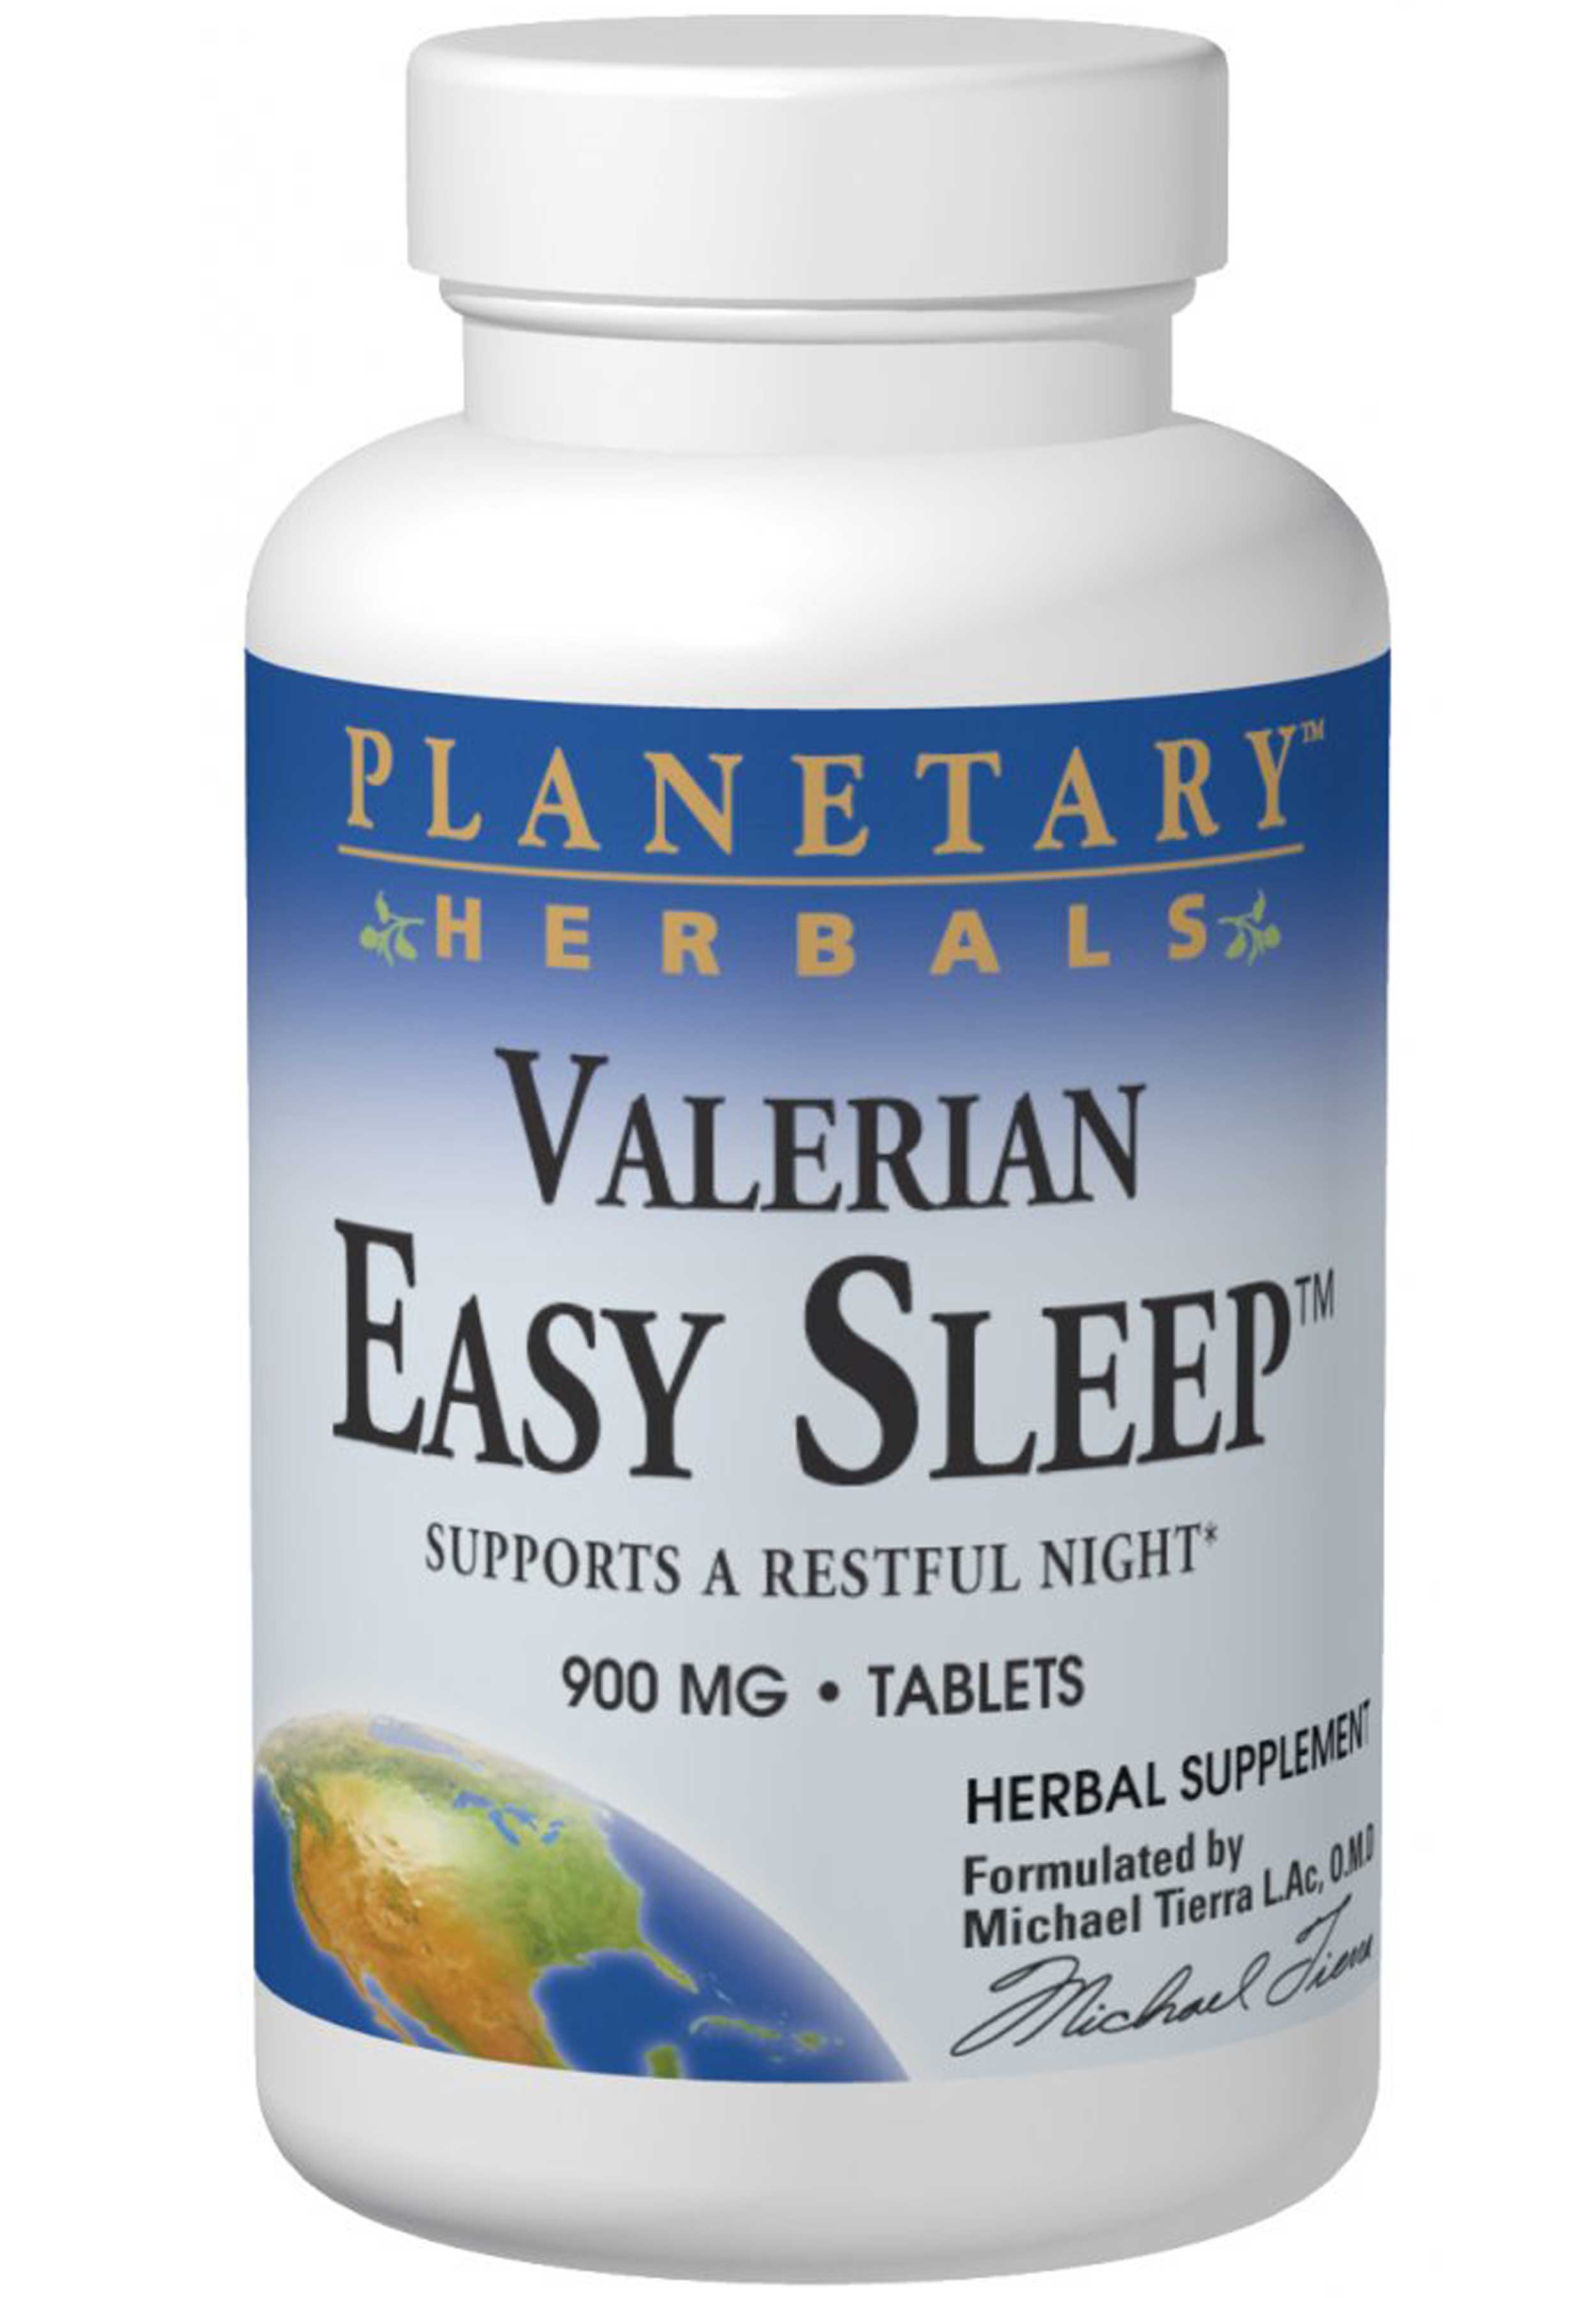 Planetary Herbals Valerian Easy Sleep™